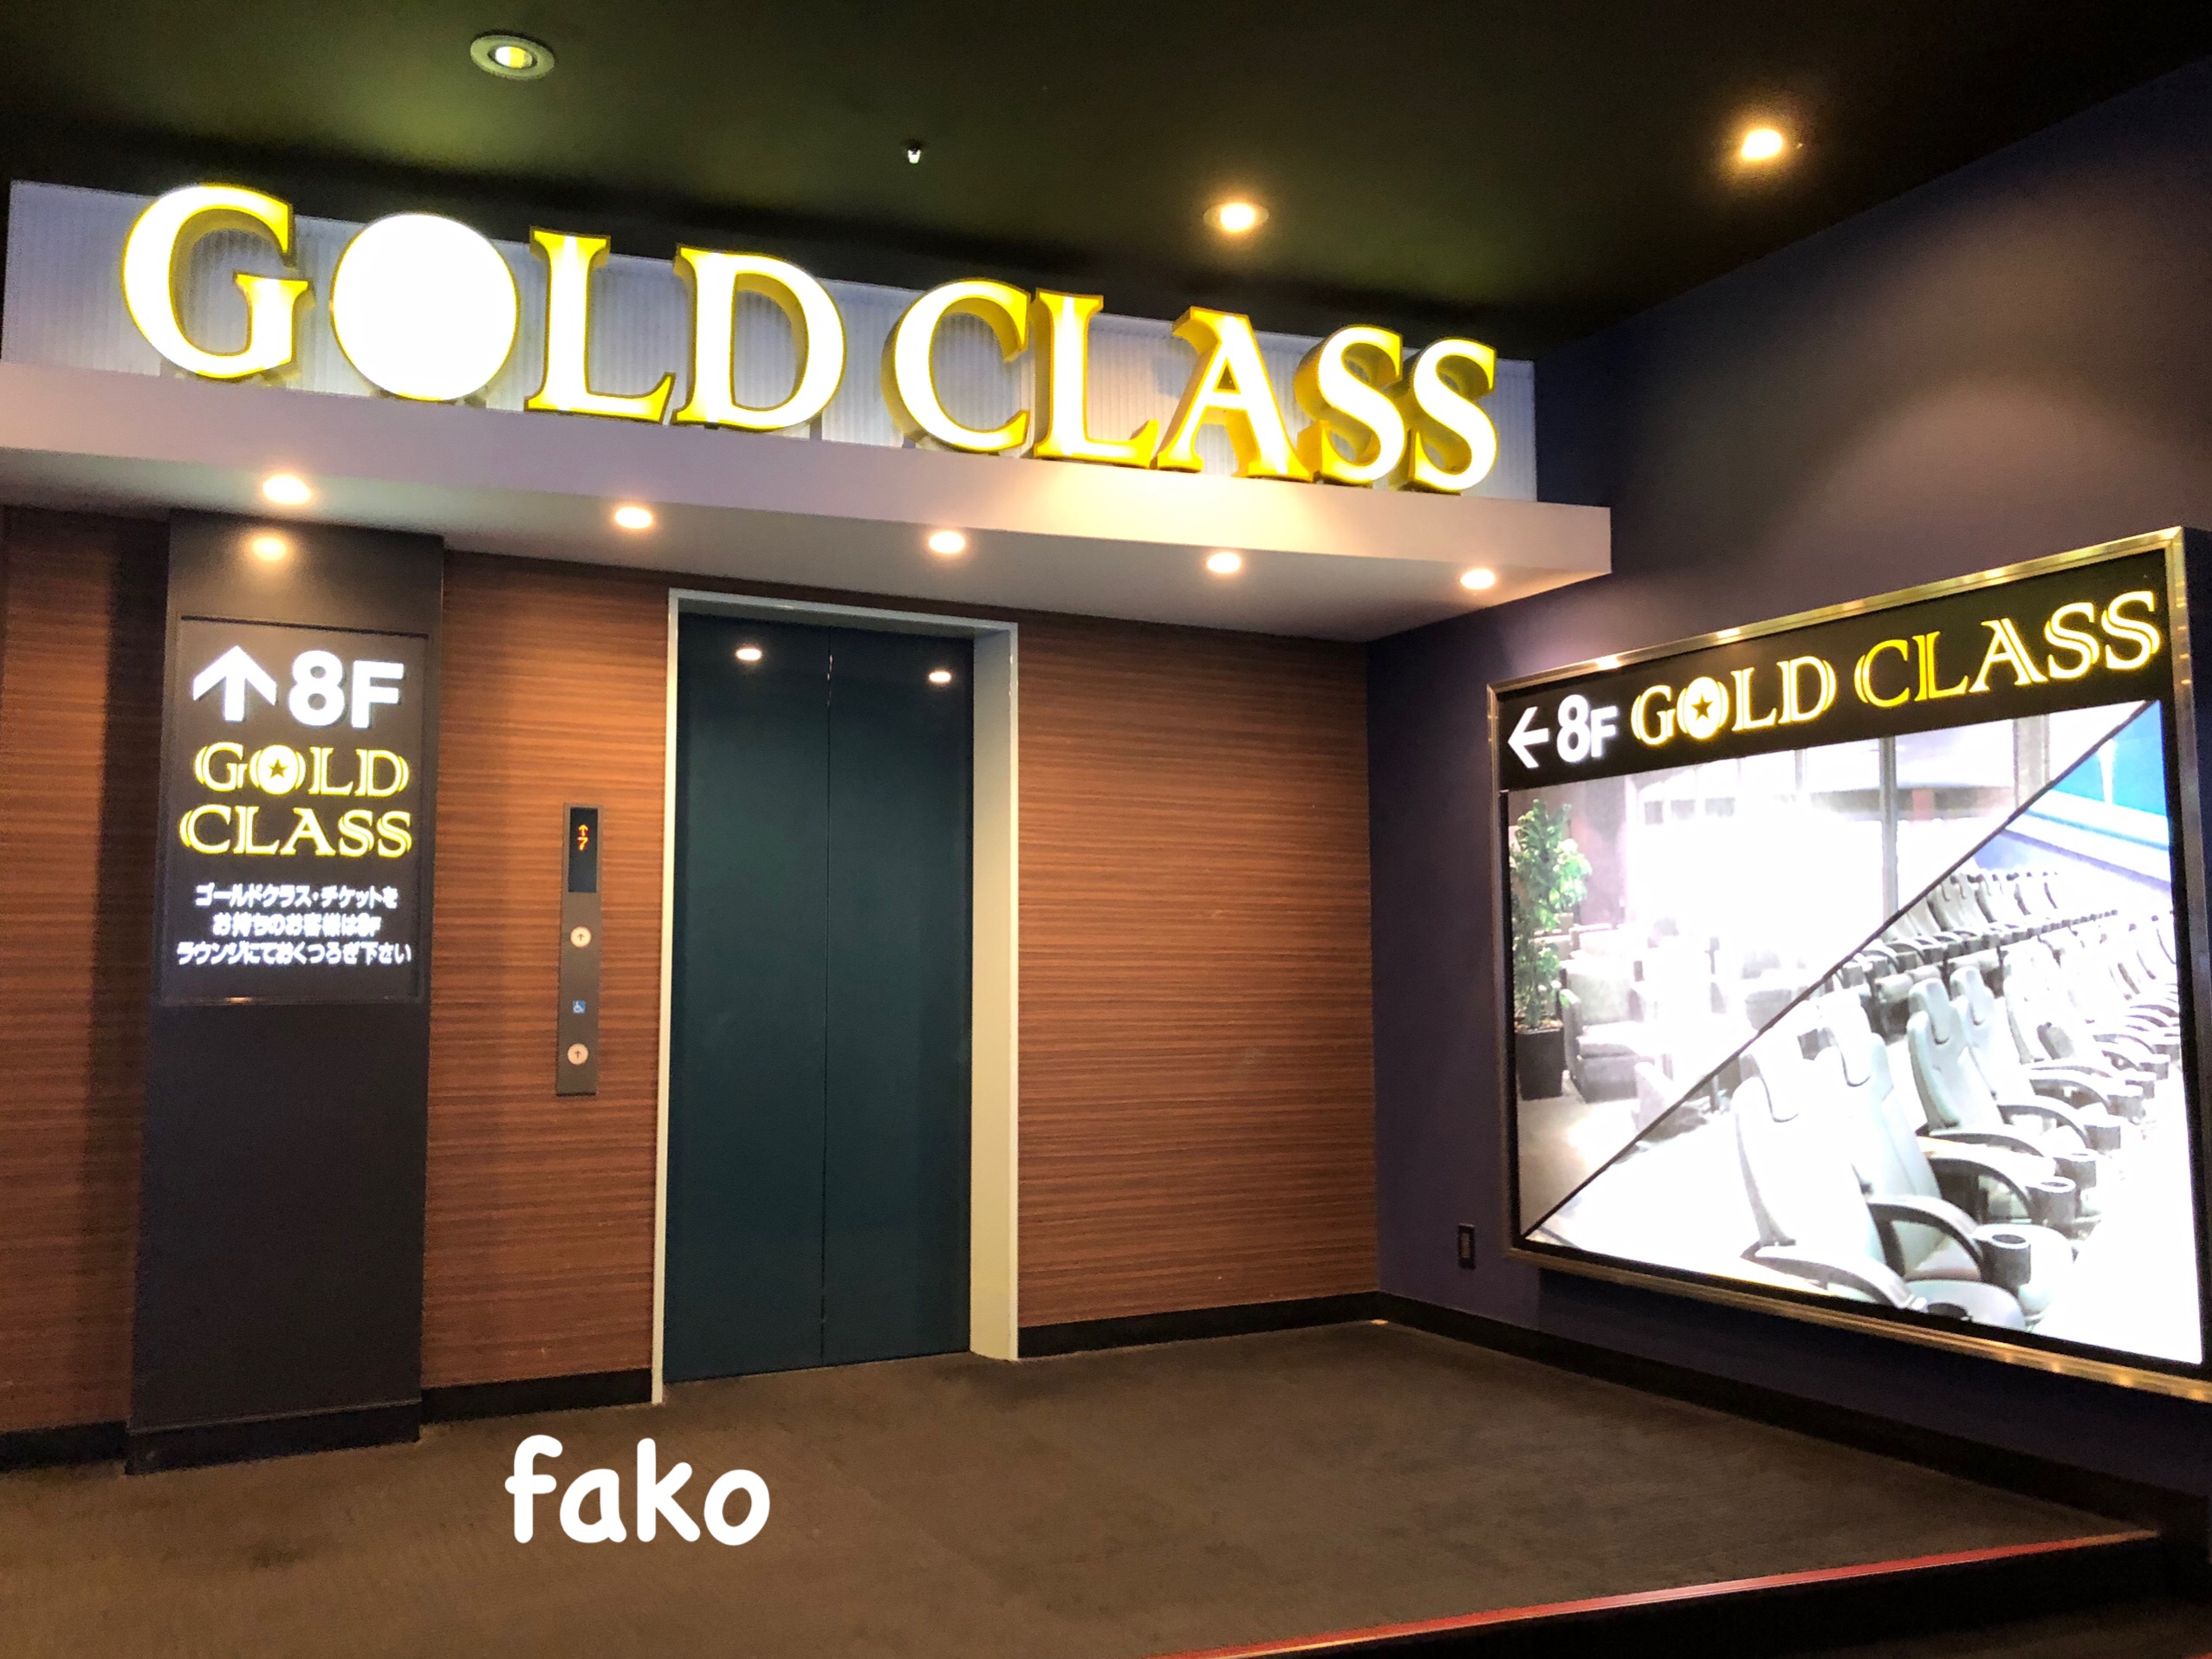 ワンランク上の映画体験 イオンシネマ ゴールドクラス を利用してみた Fakoのウェディングマニュアル